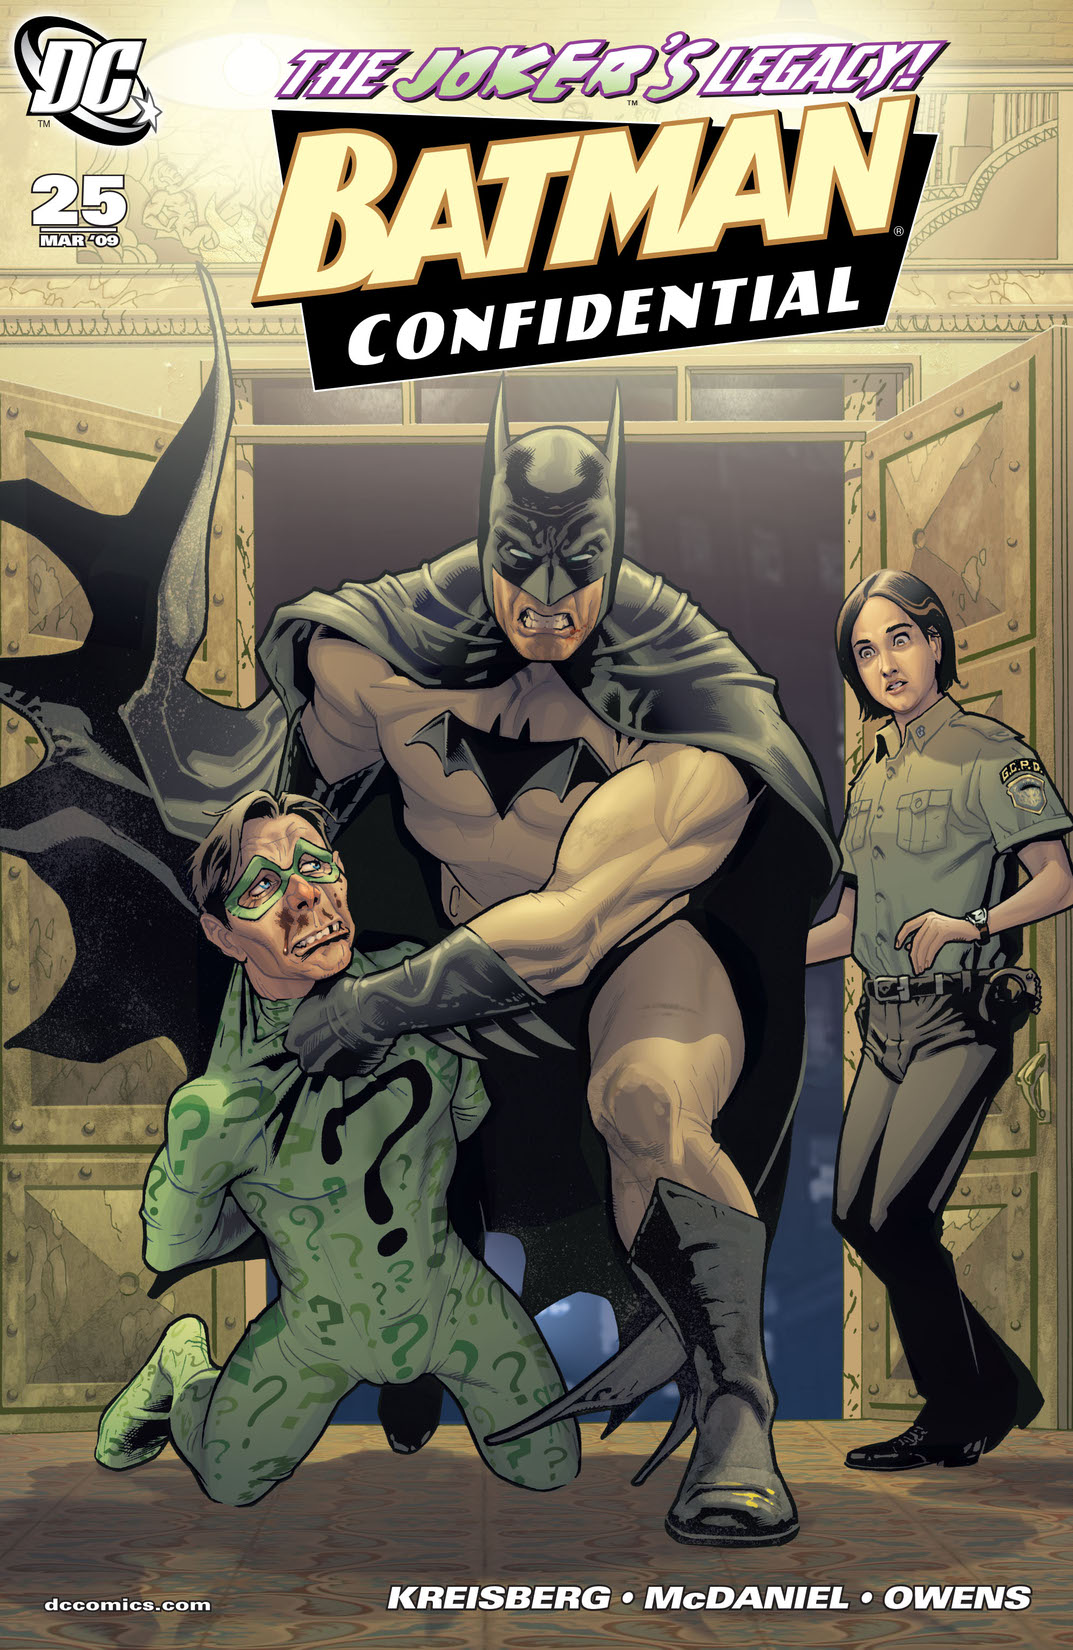 Batman Confidential #25 preview images